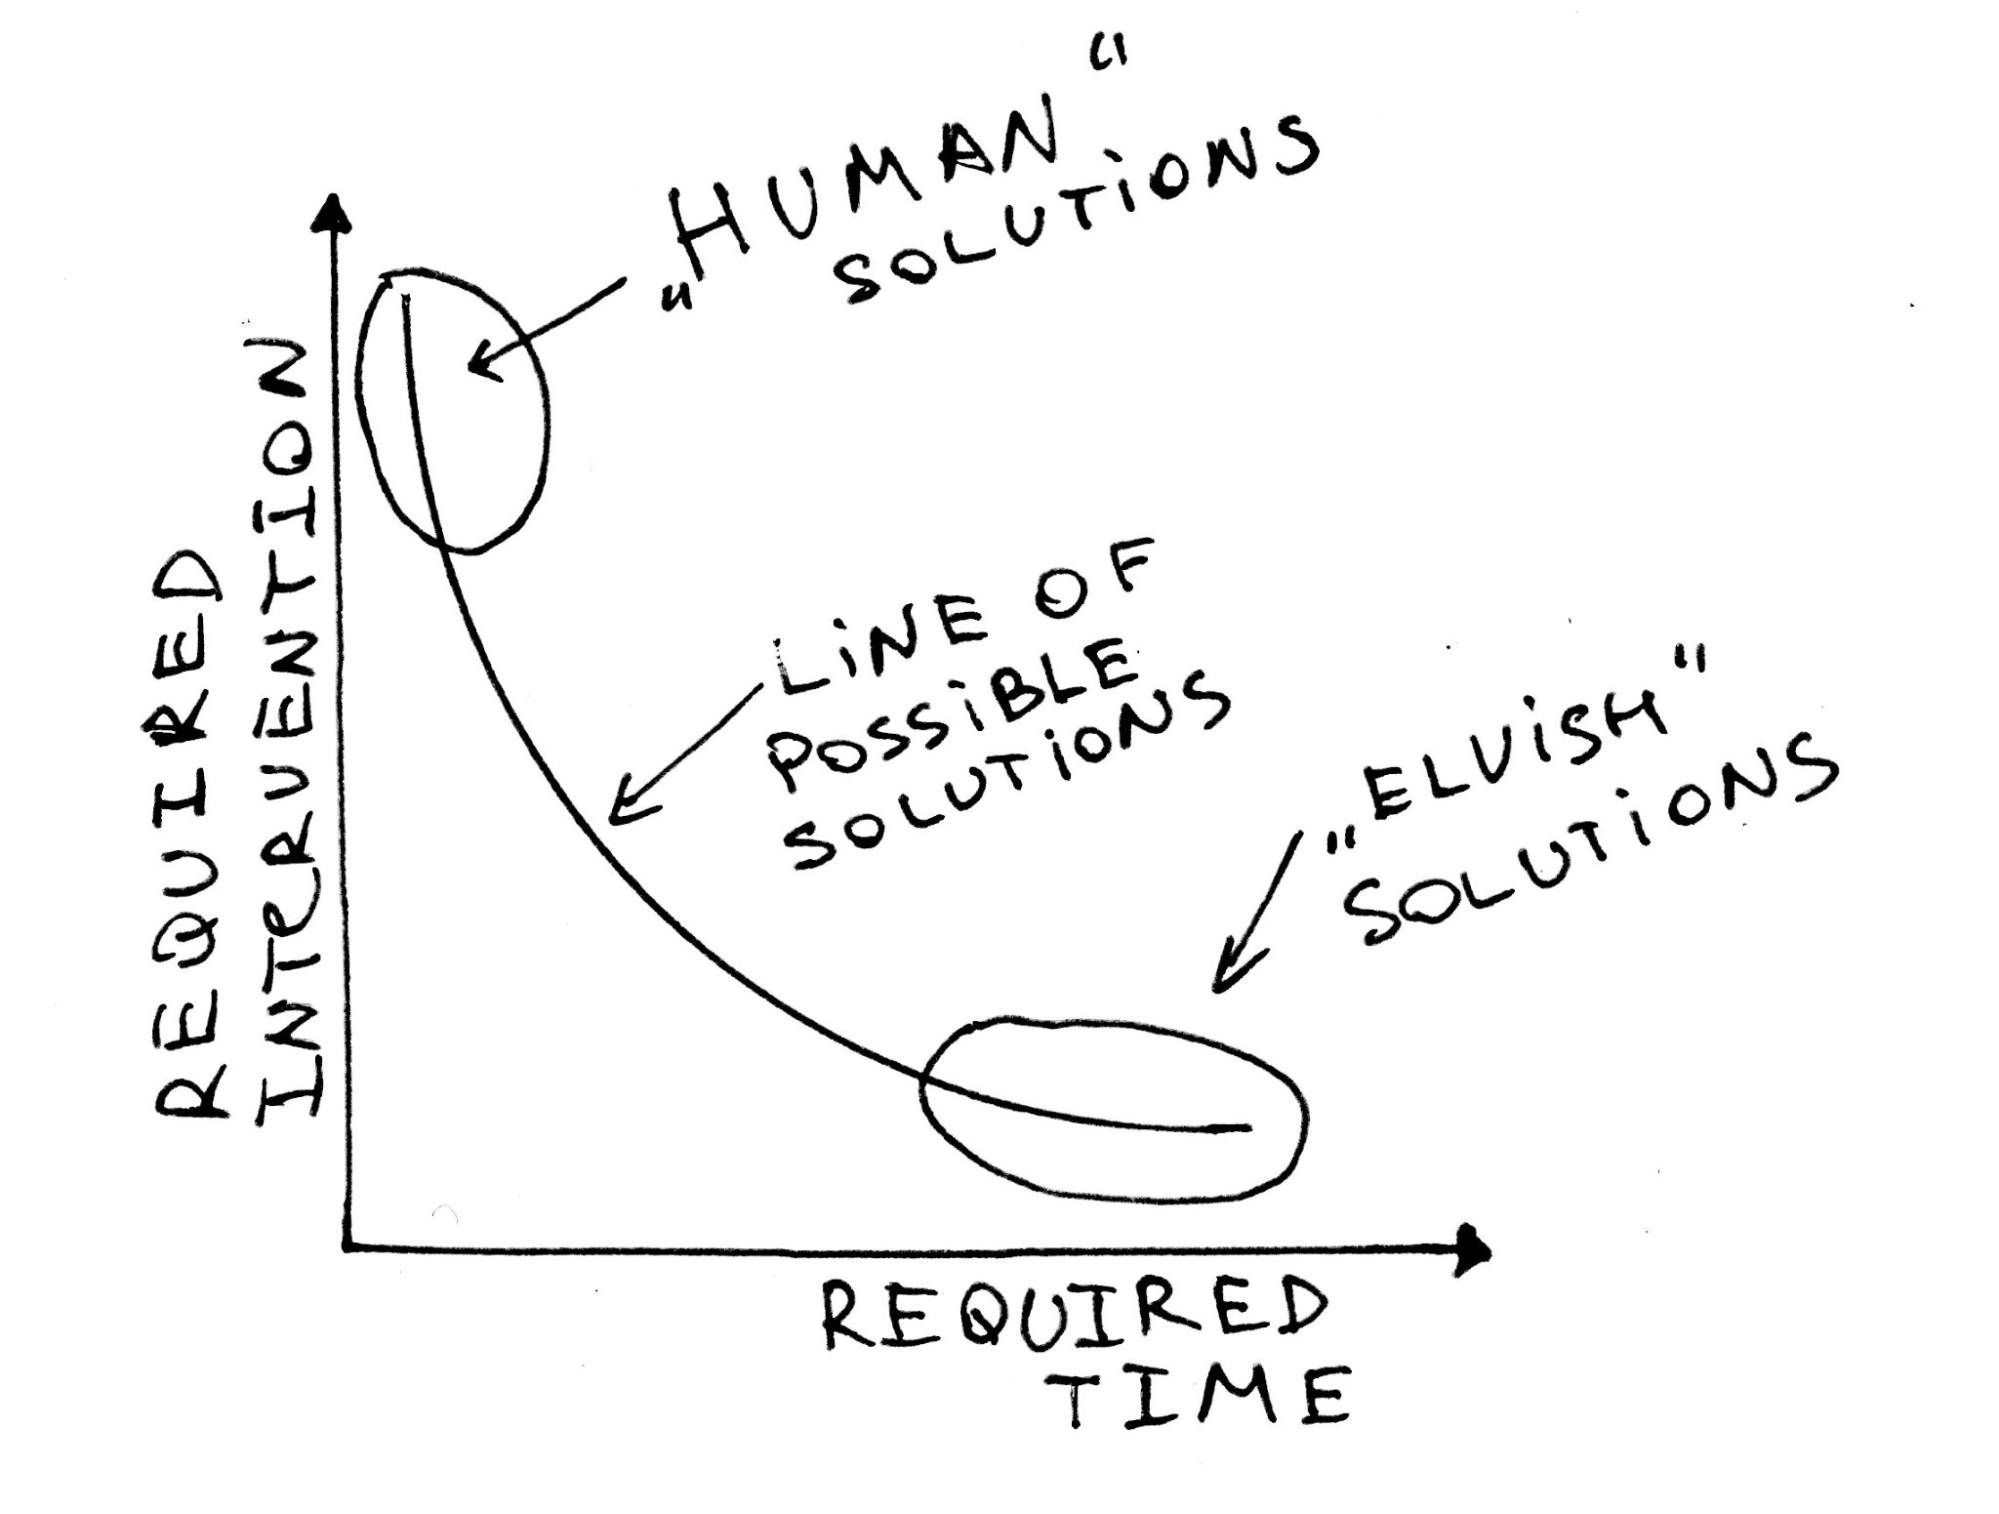 human solutions vs. elvish solutions